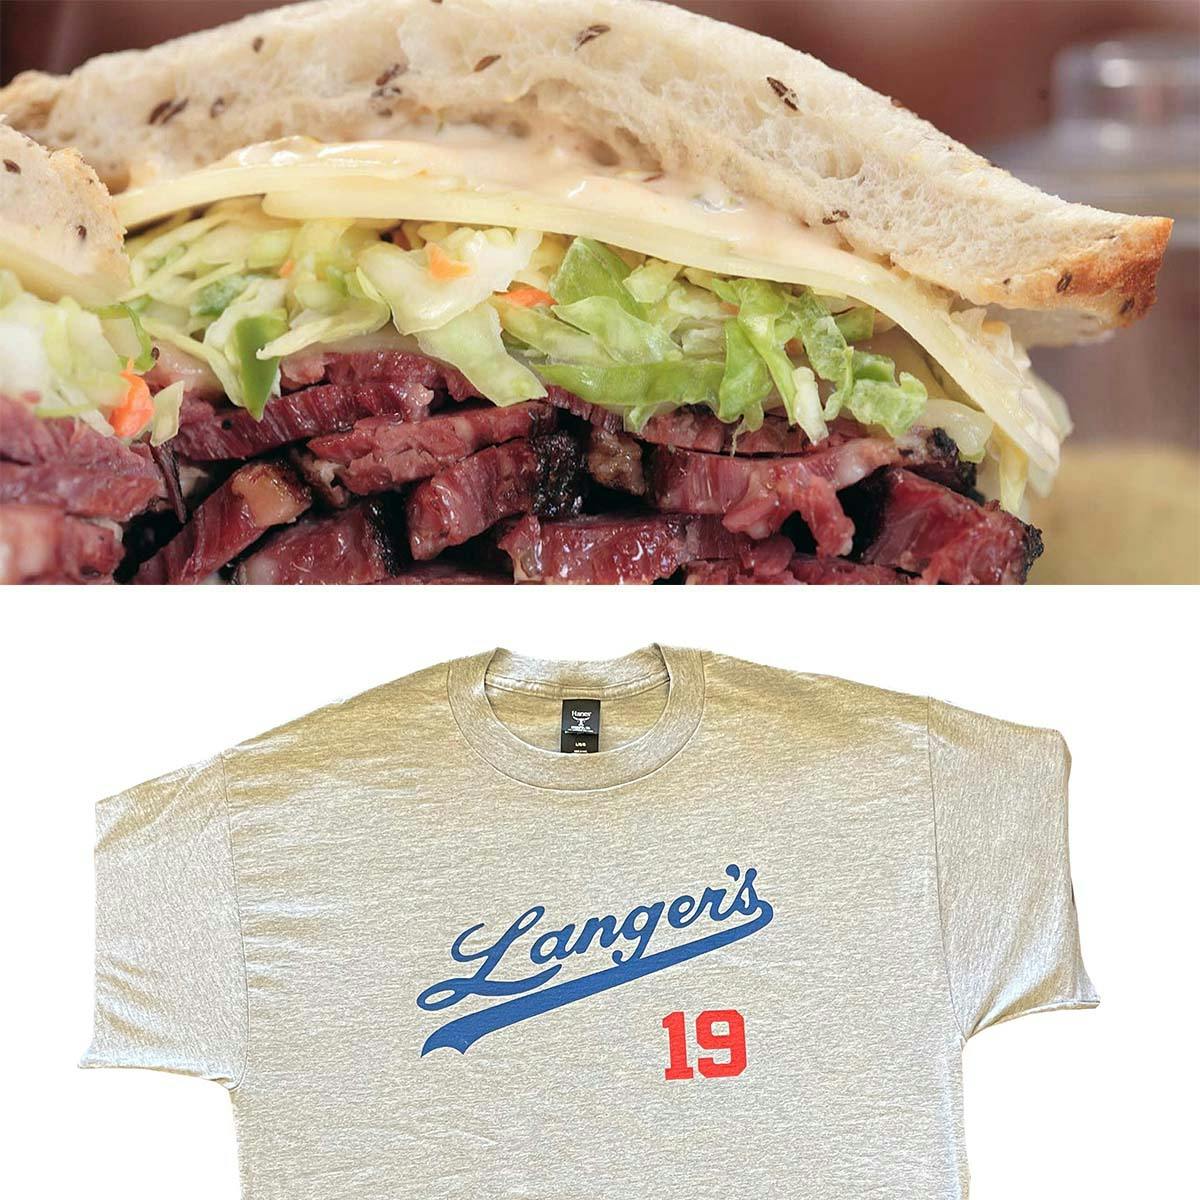 Langer's Dodgers-Style #19 Shirt  Langer's Delicatessen-Restaurant